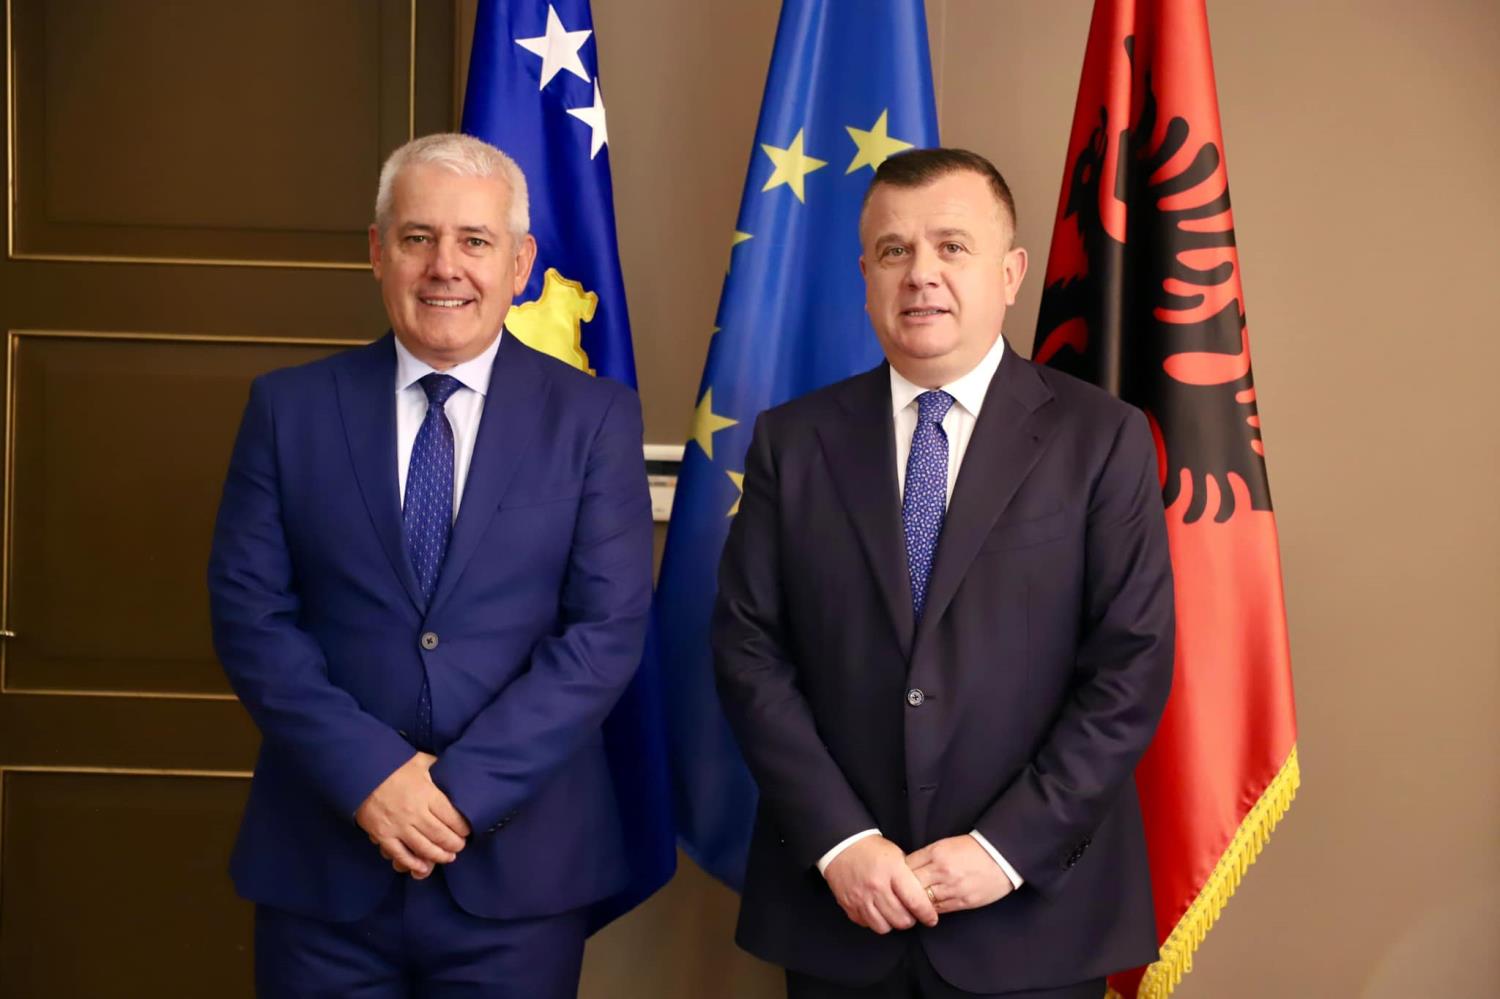 Ministar unutrašnjih poslova g, Xhelal Sveçla sastao se sa svojim kolegom iz Albanije, g. Taulant Balla